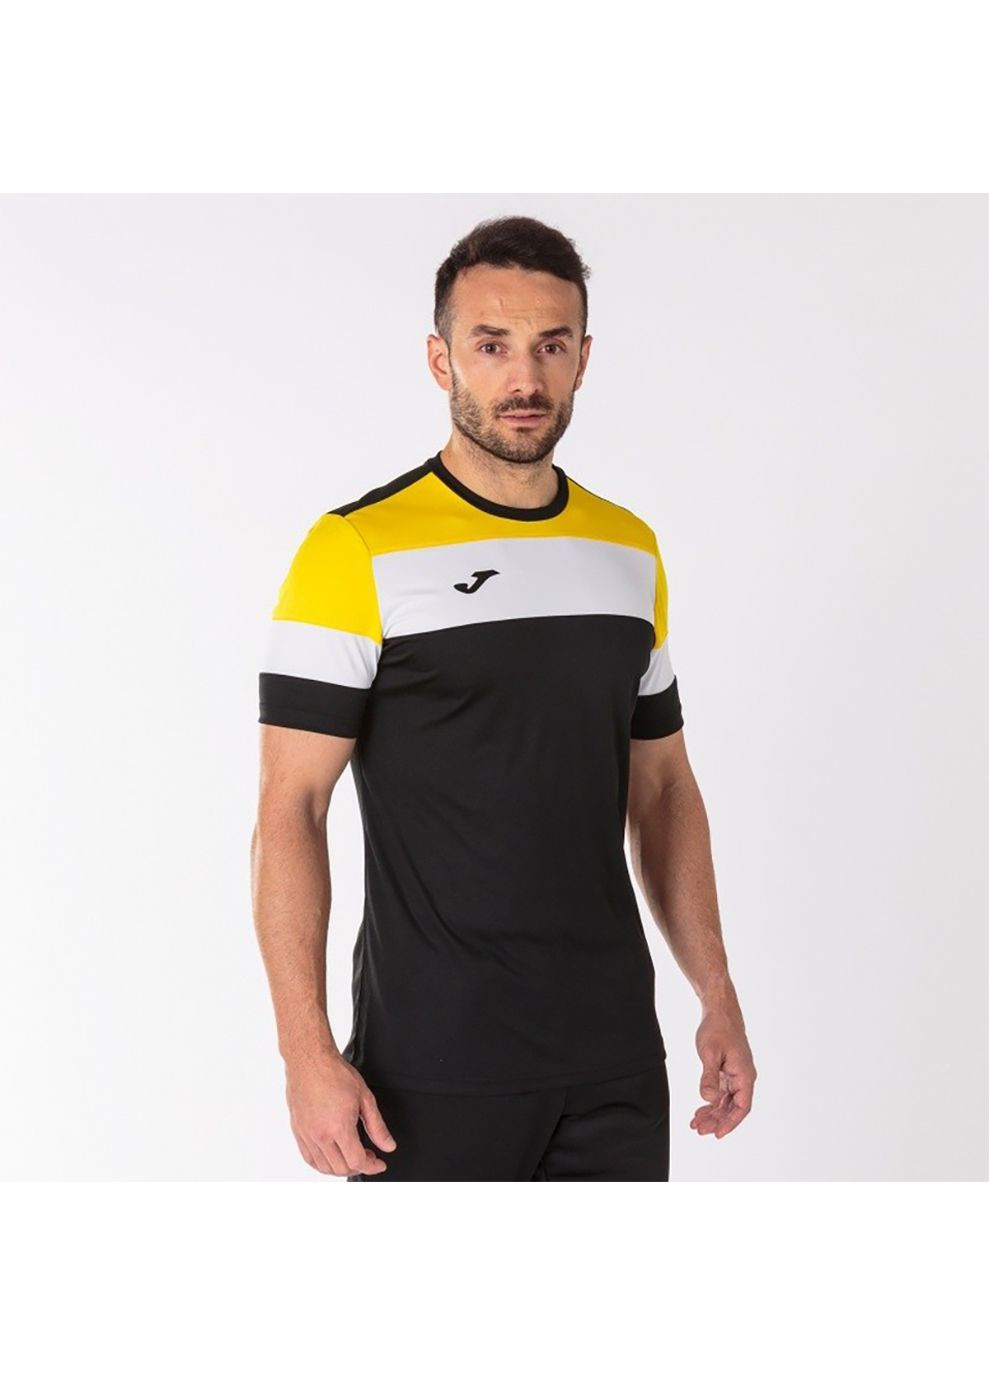 Комбинированная футболка crew iv t-shirt black-yellow s/s черный,желтый 101534.109 Joma